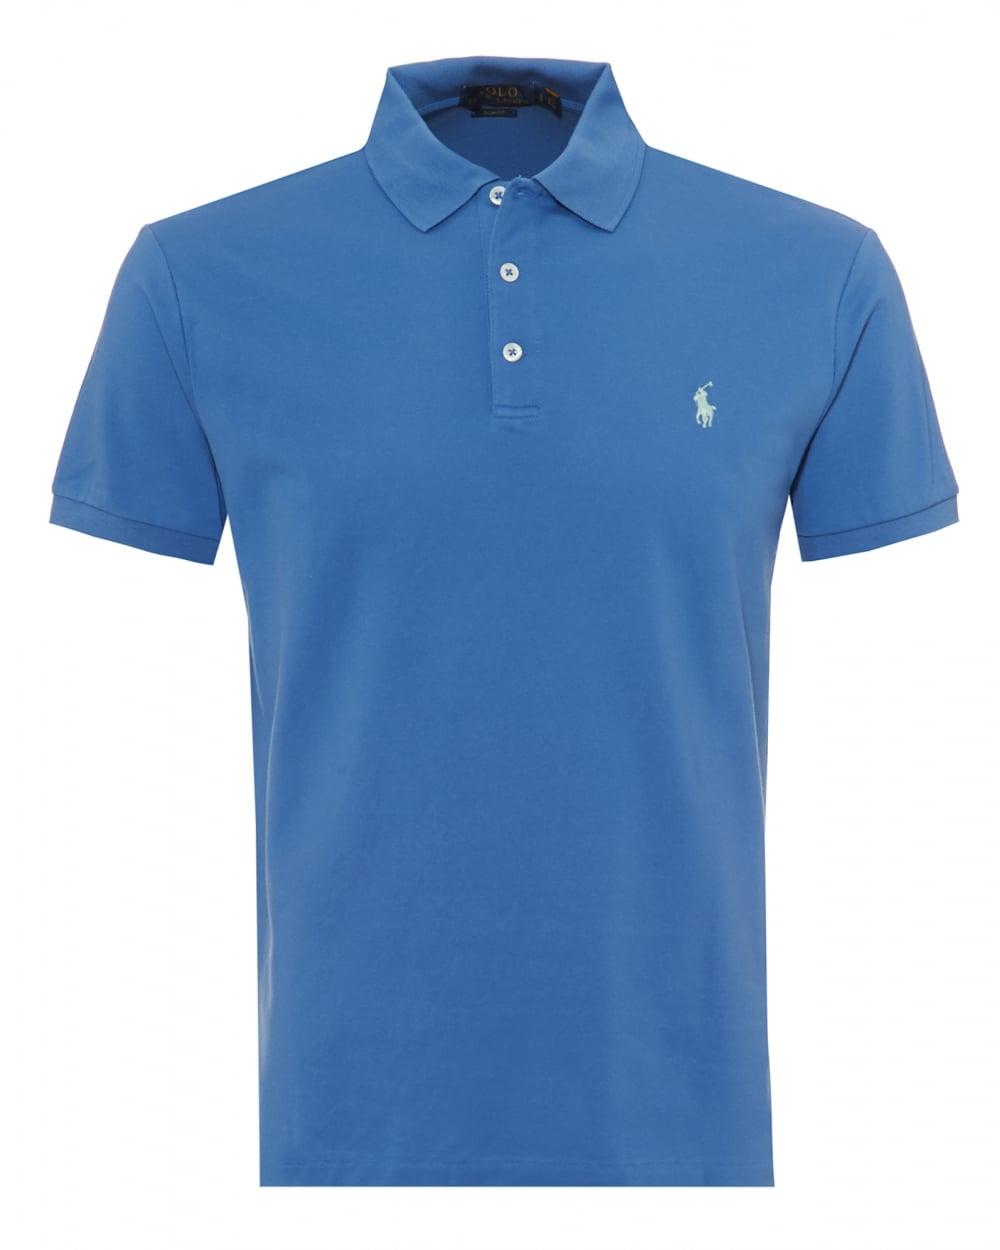 Blue Polo Logo - Ralph Lauren Mens Mesh Polo Shirt, Embroidered Logo Blue Polo